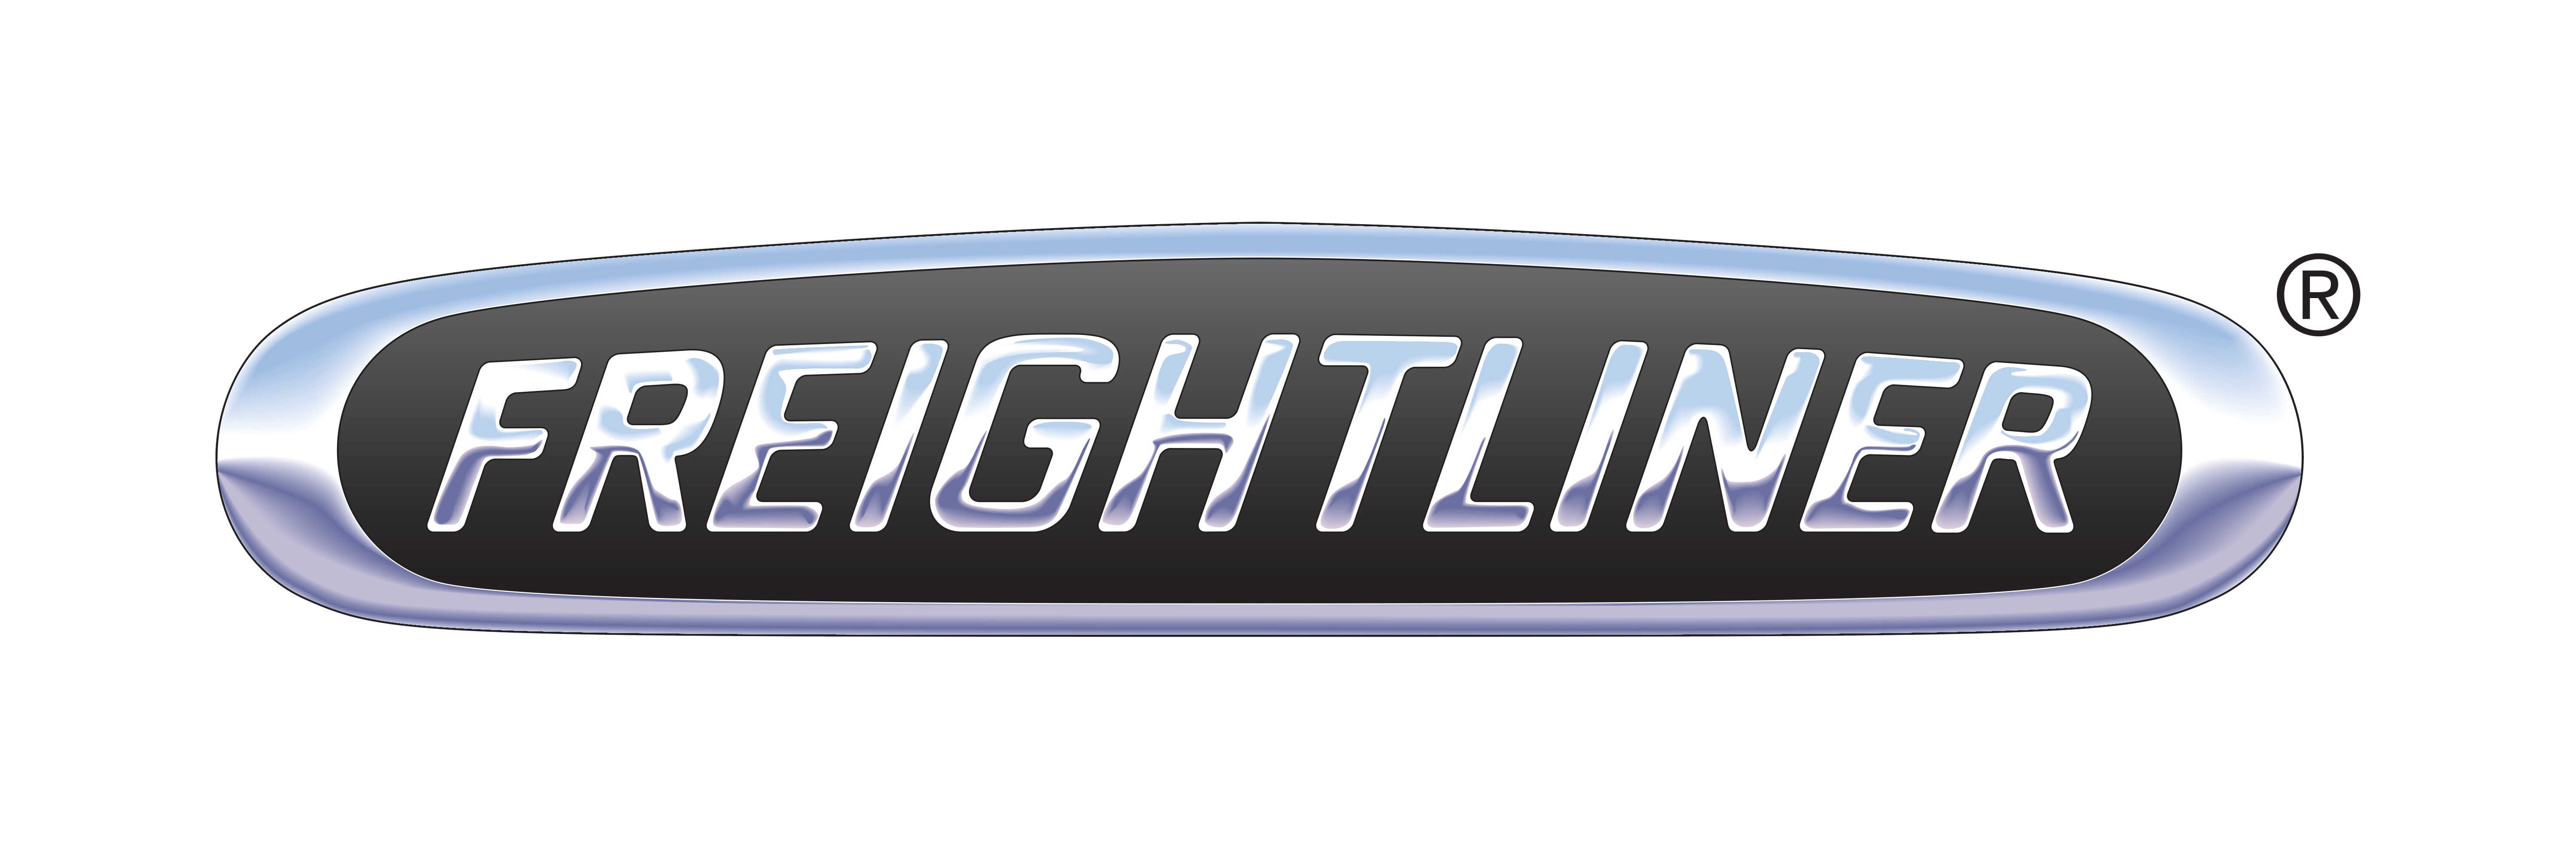 Freightliner-logo-6000x2000